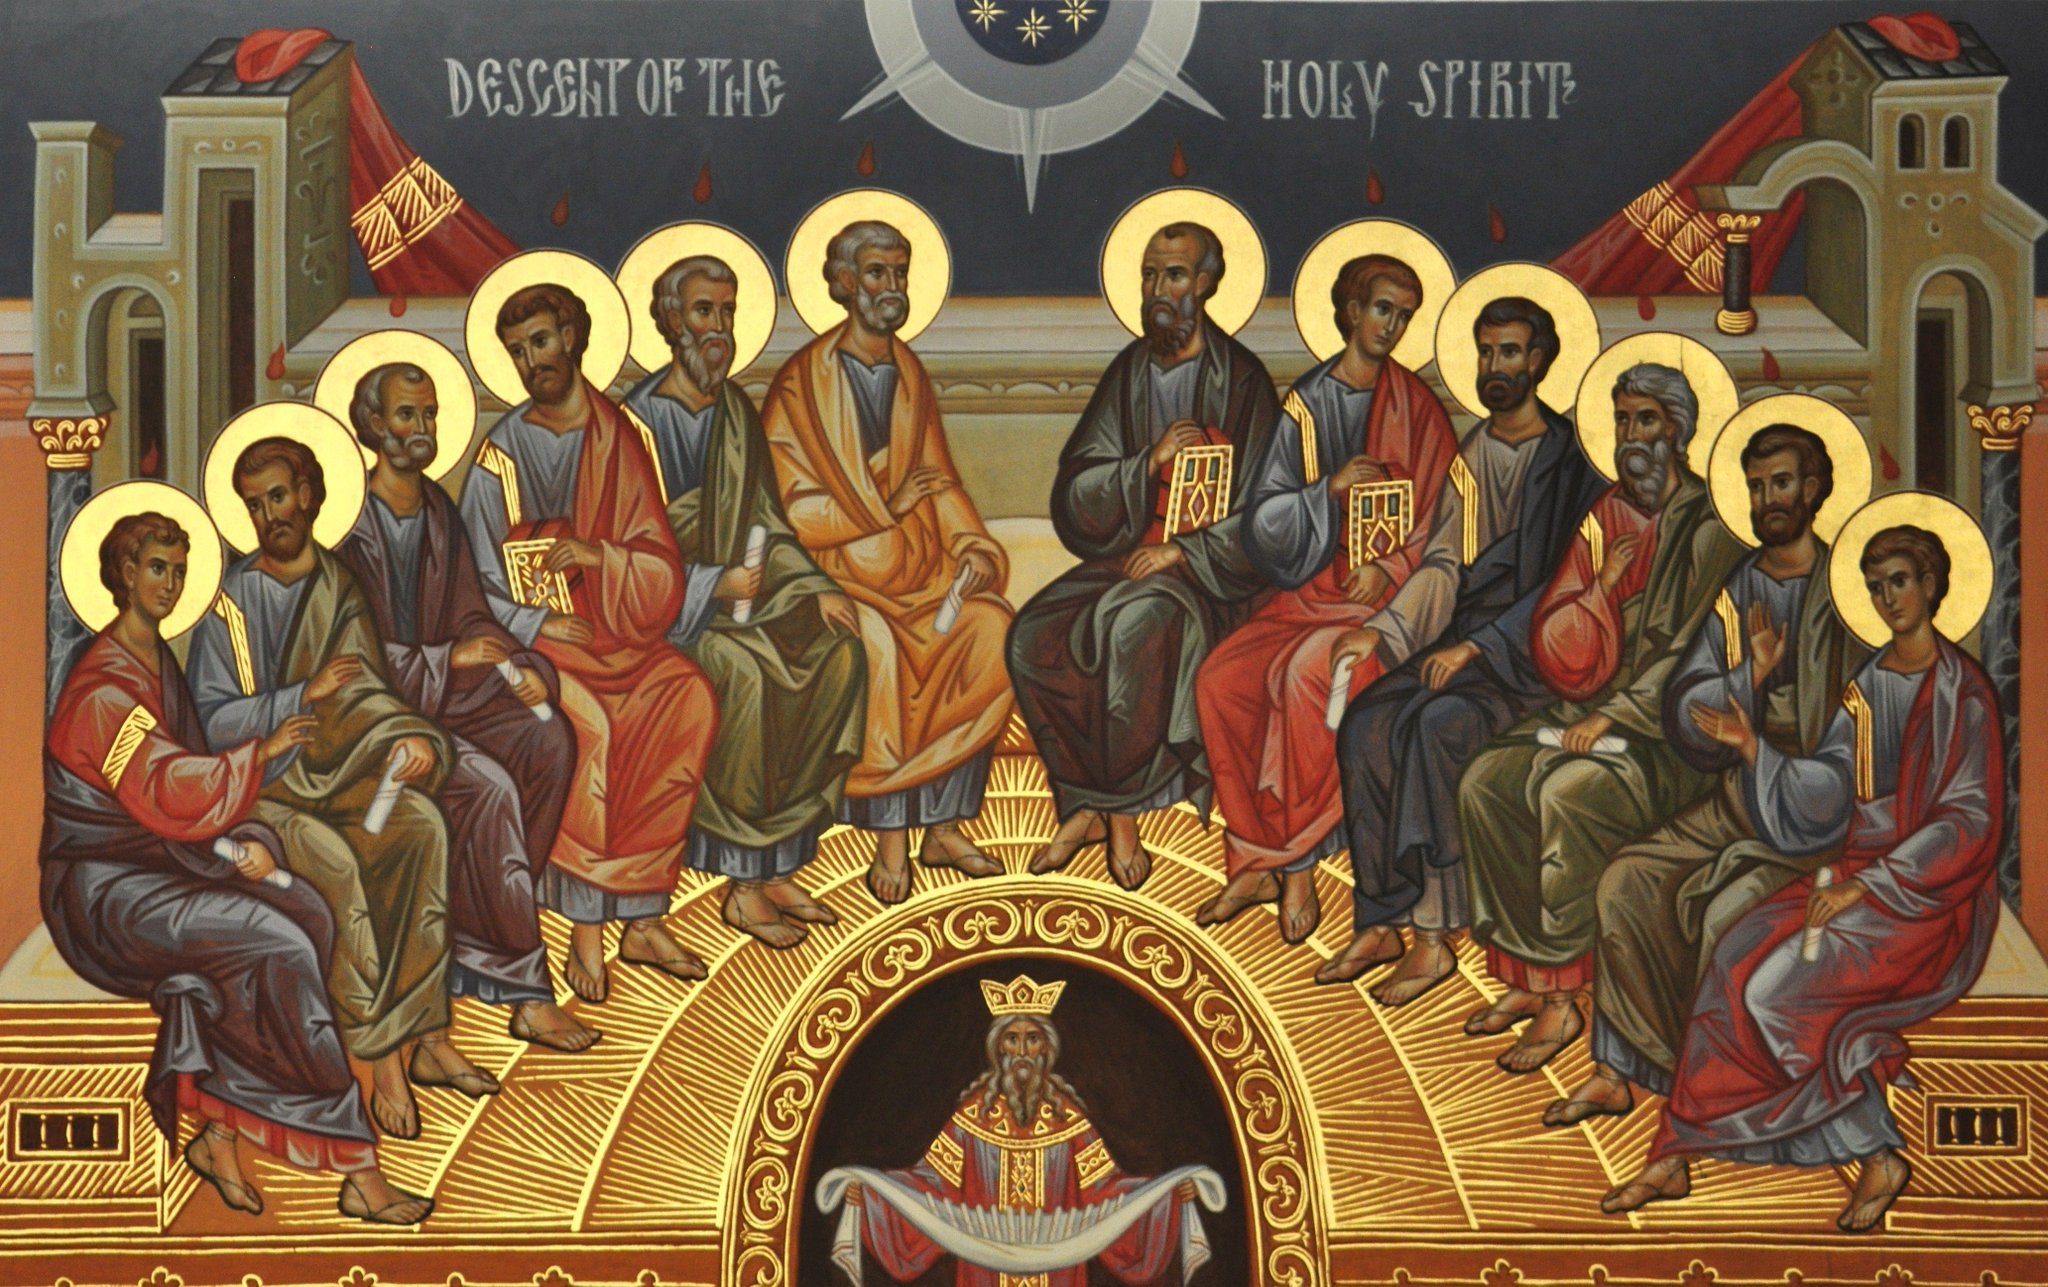 Фото сошествия святого духа. Сошествие Святого духа на 12 апостолов. Икона "Сошествие Святого духа". Икона Сошествие Святого духа на апостолов.